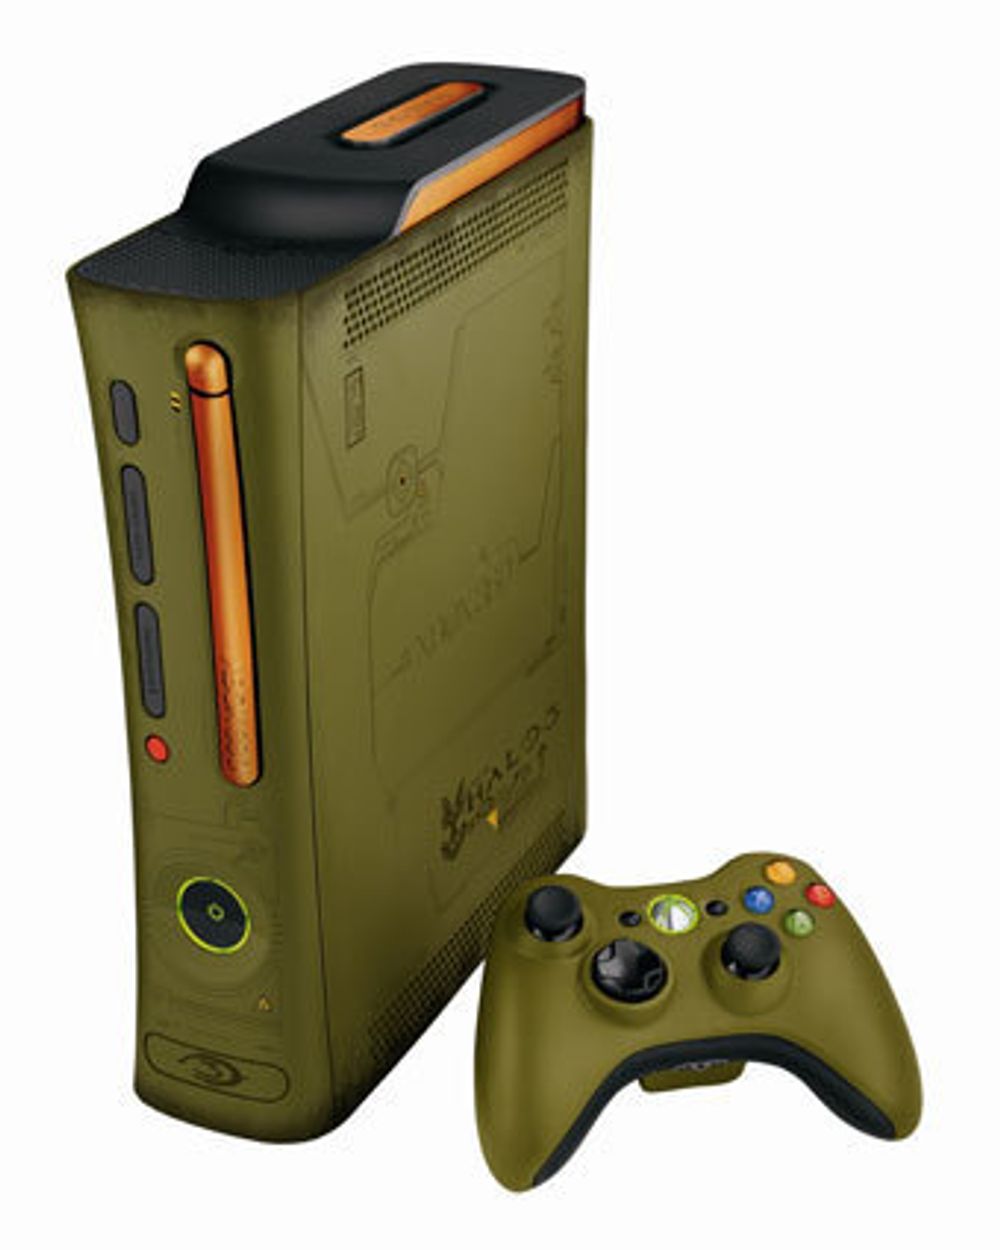 EGEN KONSOLL: Man kan kjøpe egne Xbox 360-konsoller til Halo 3 spillet som har lanseringsdato 25. september. FOTO: MICROSOFT